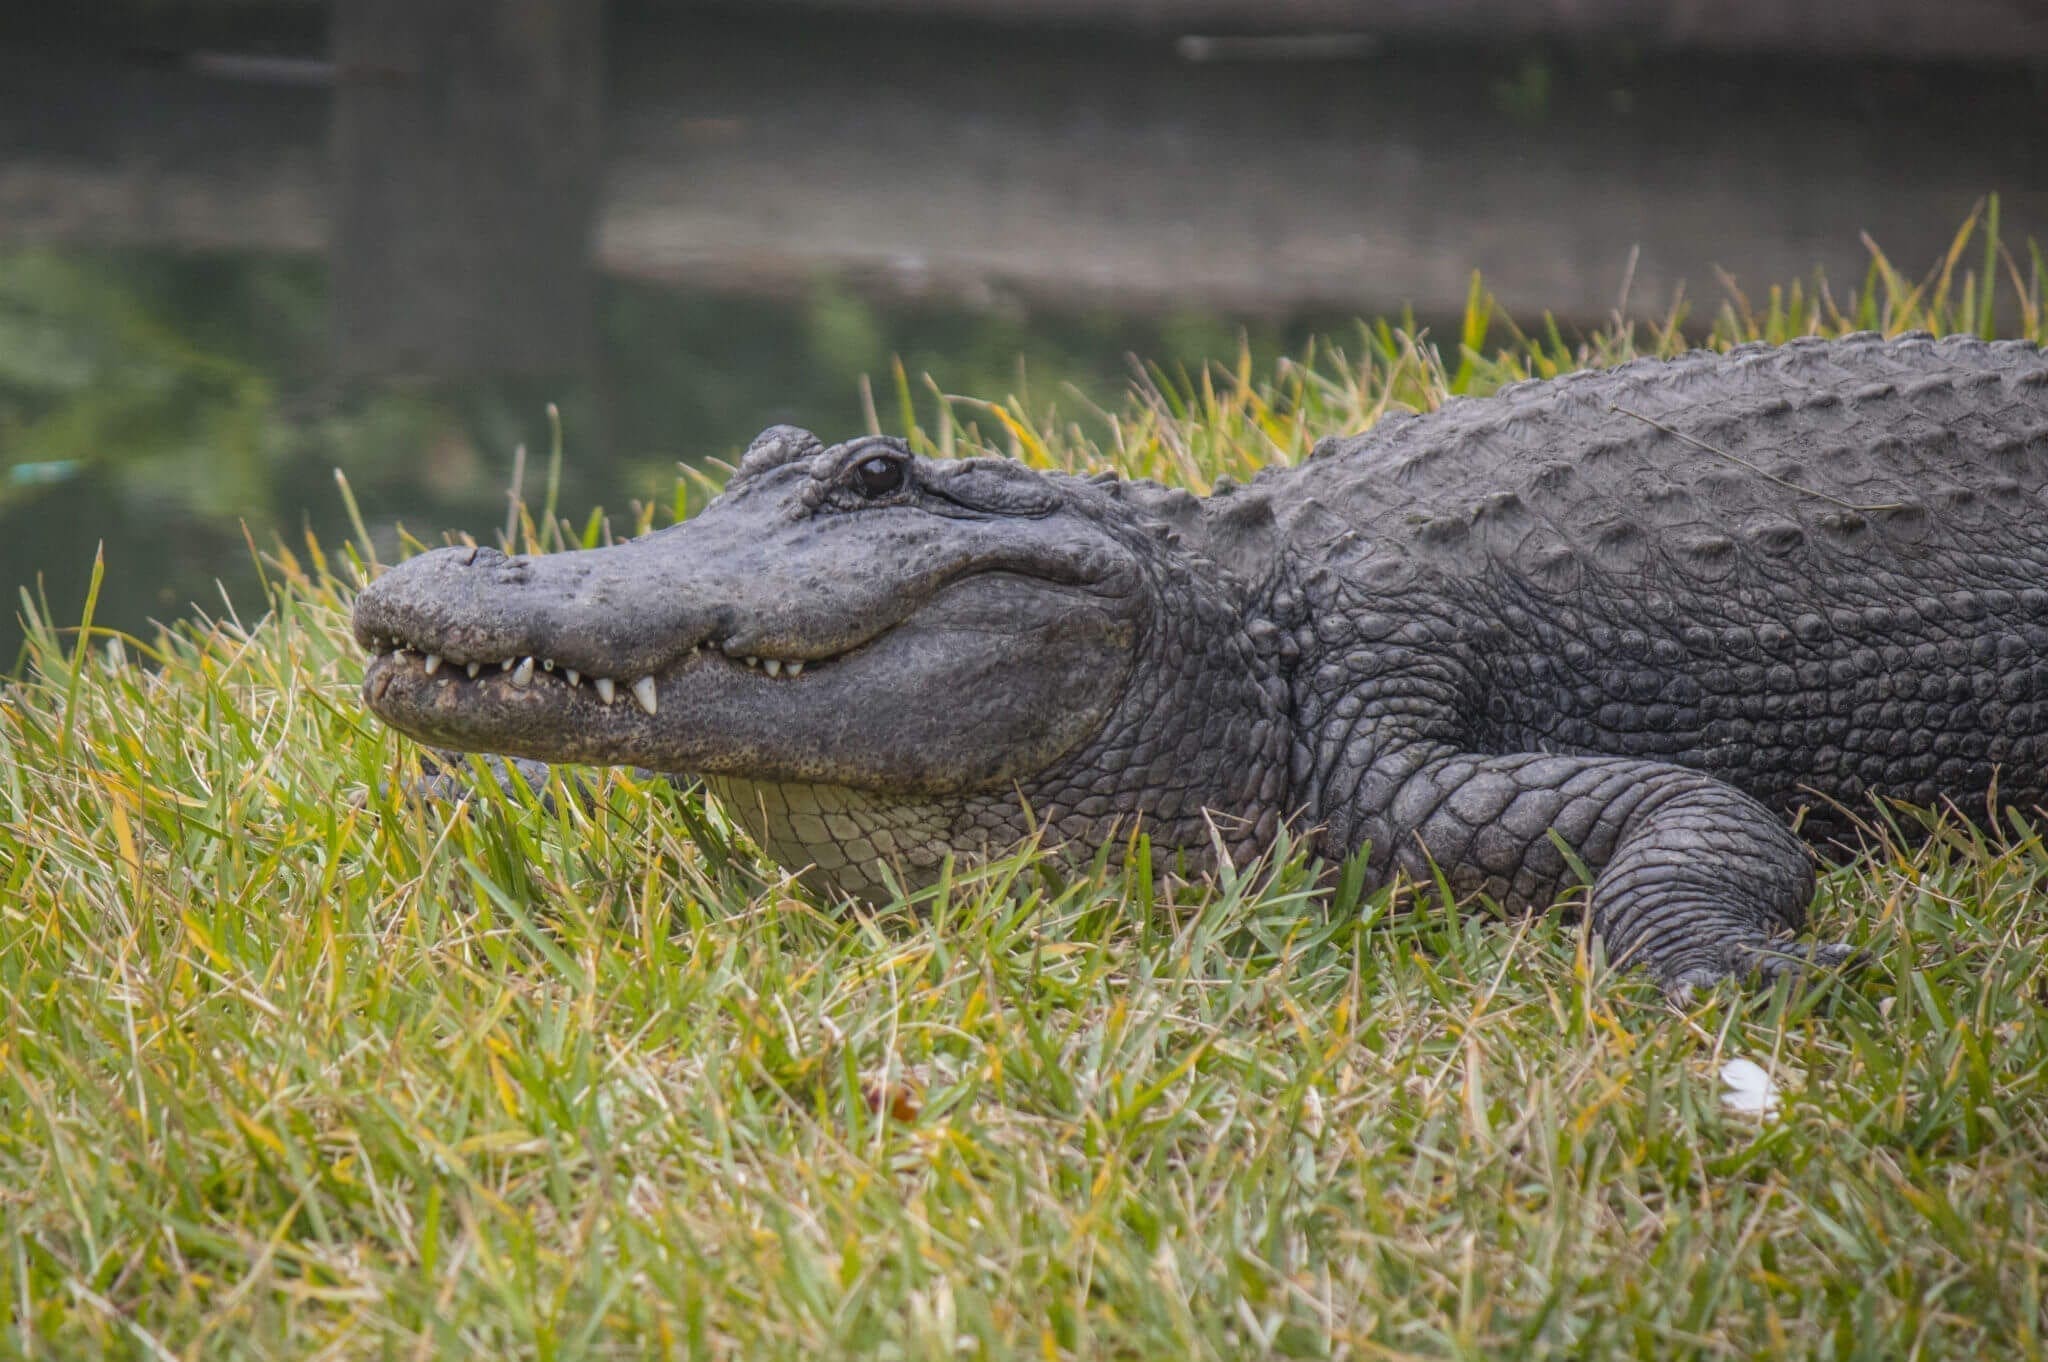 Alligator on grass